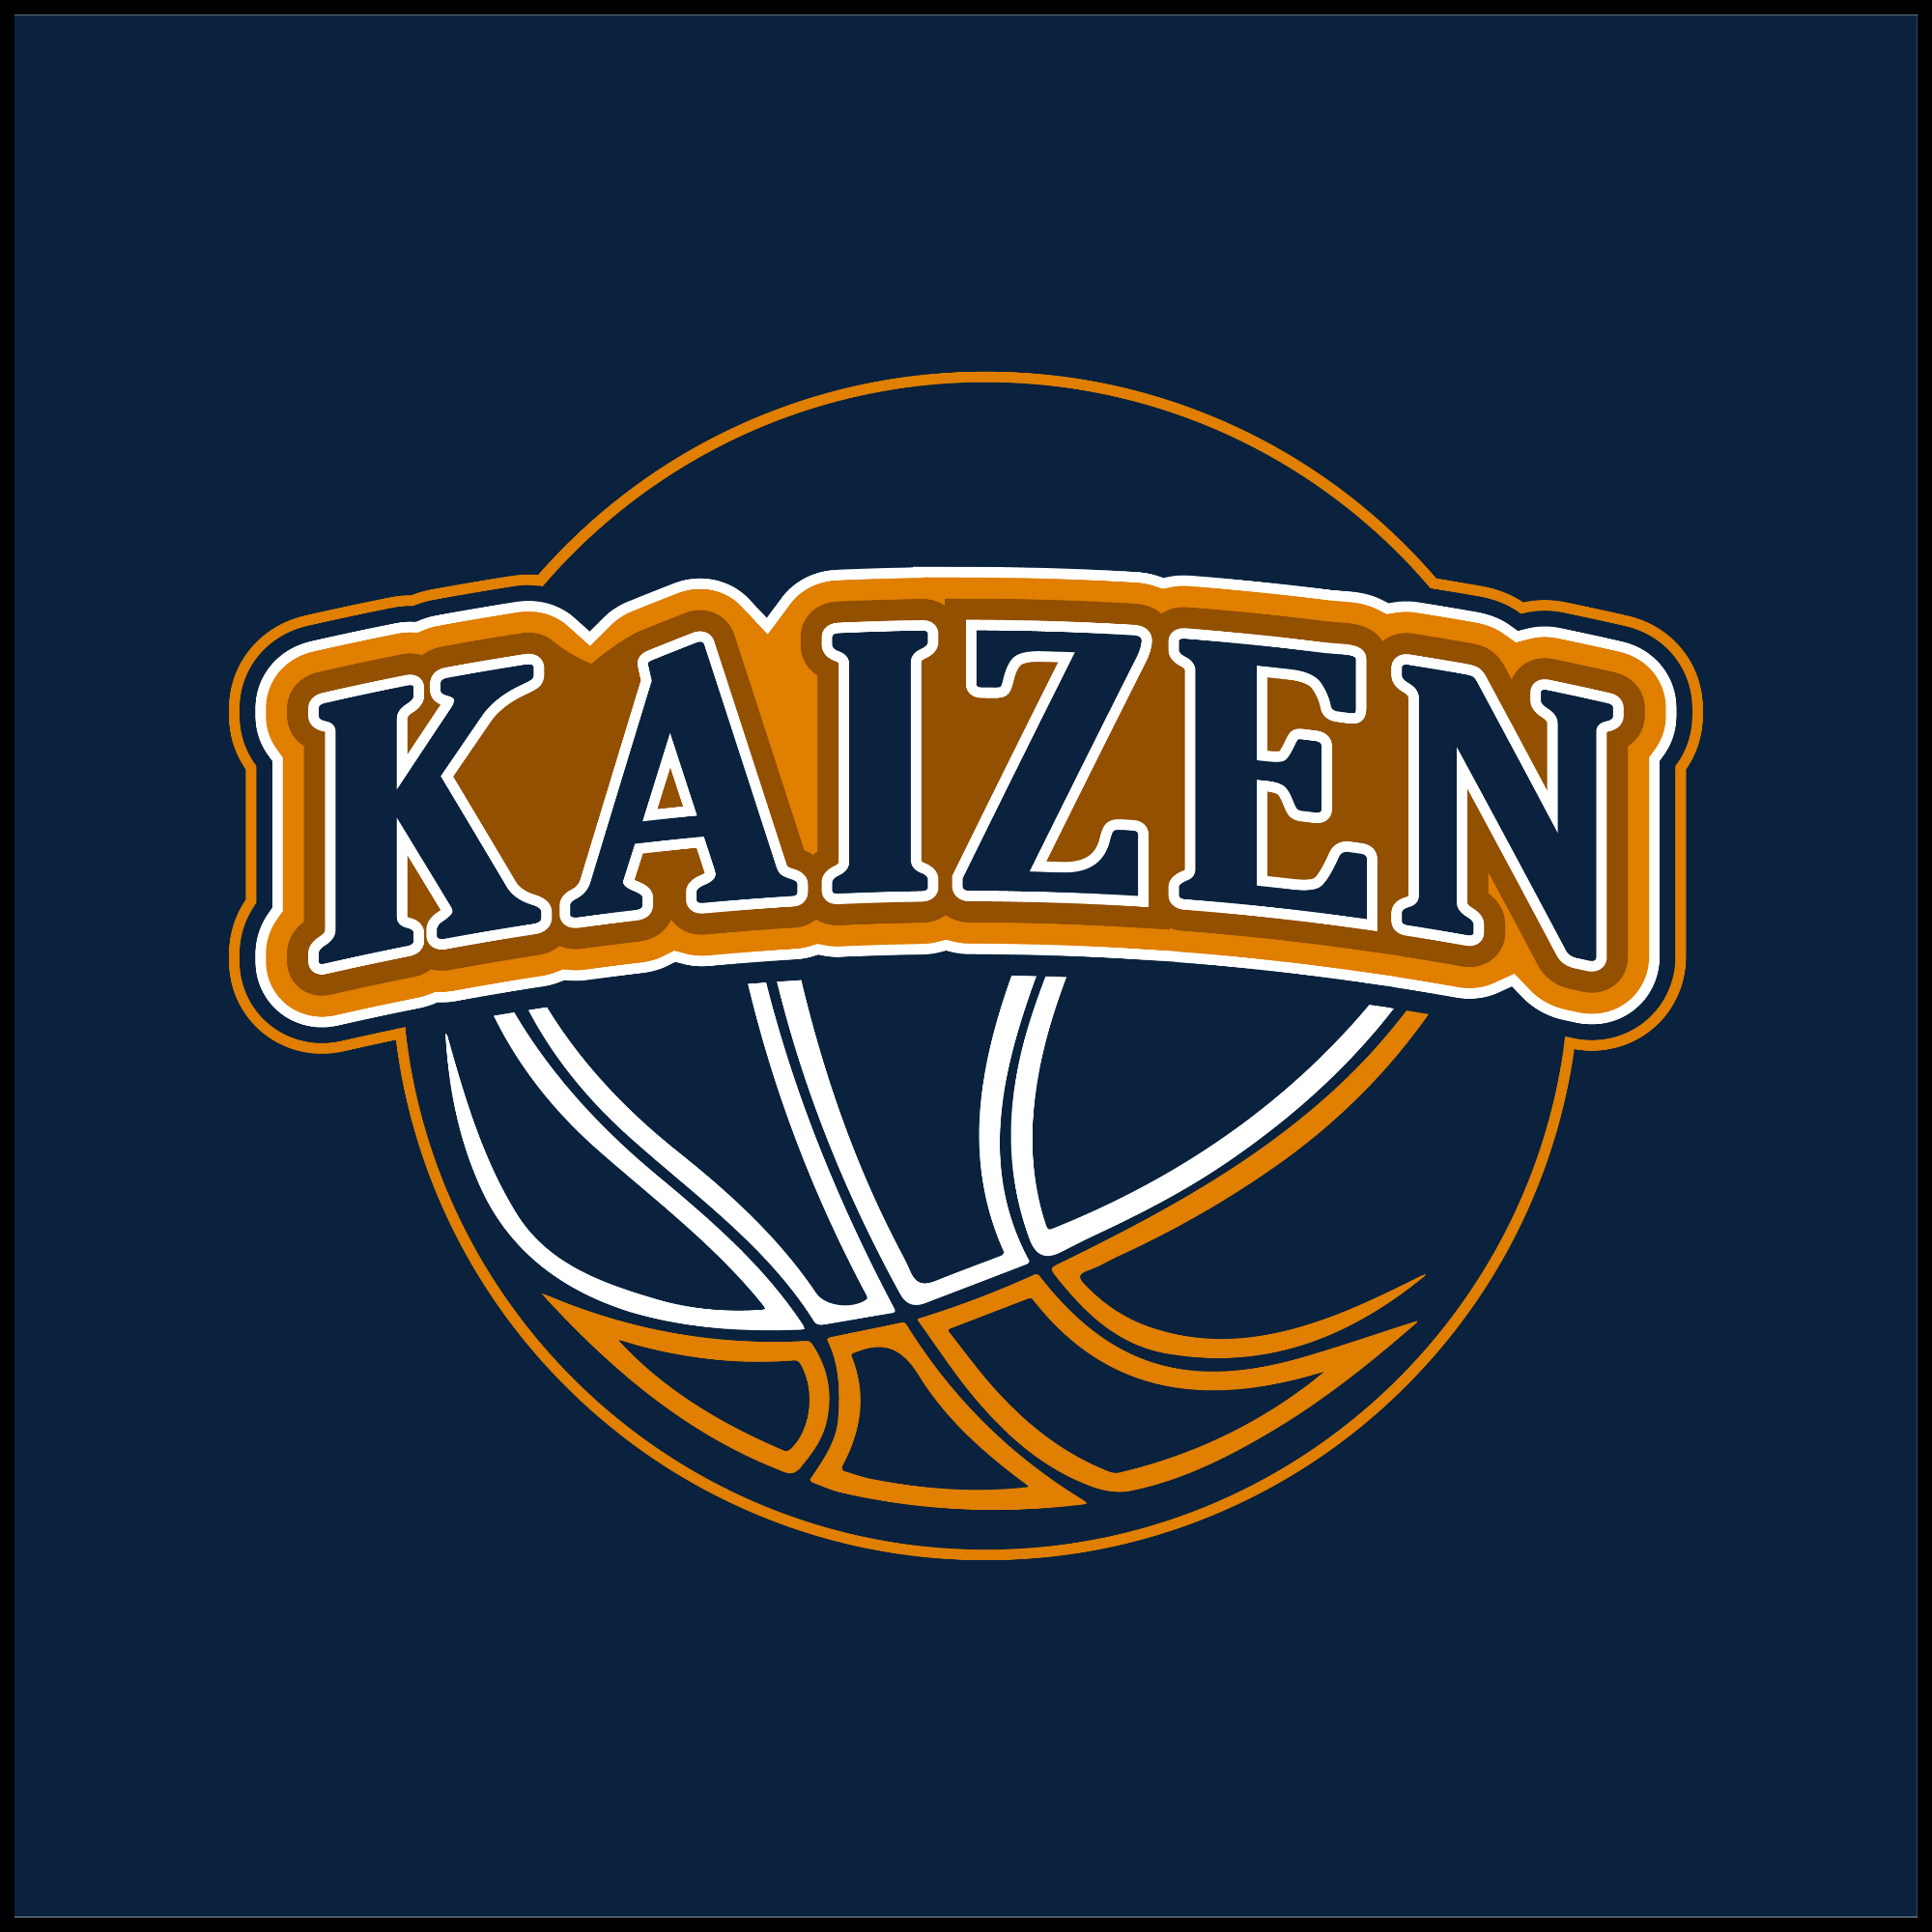 The official logo of Kaizen Warriors